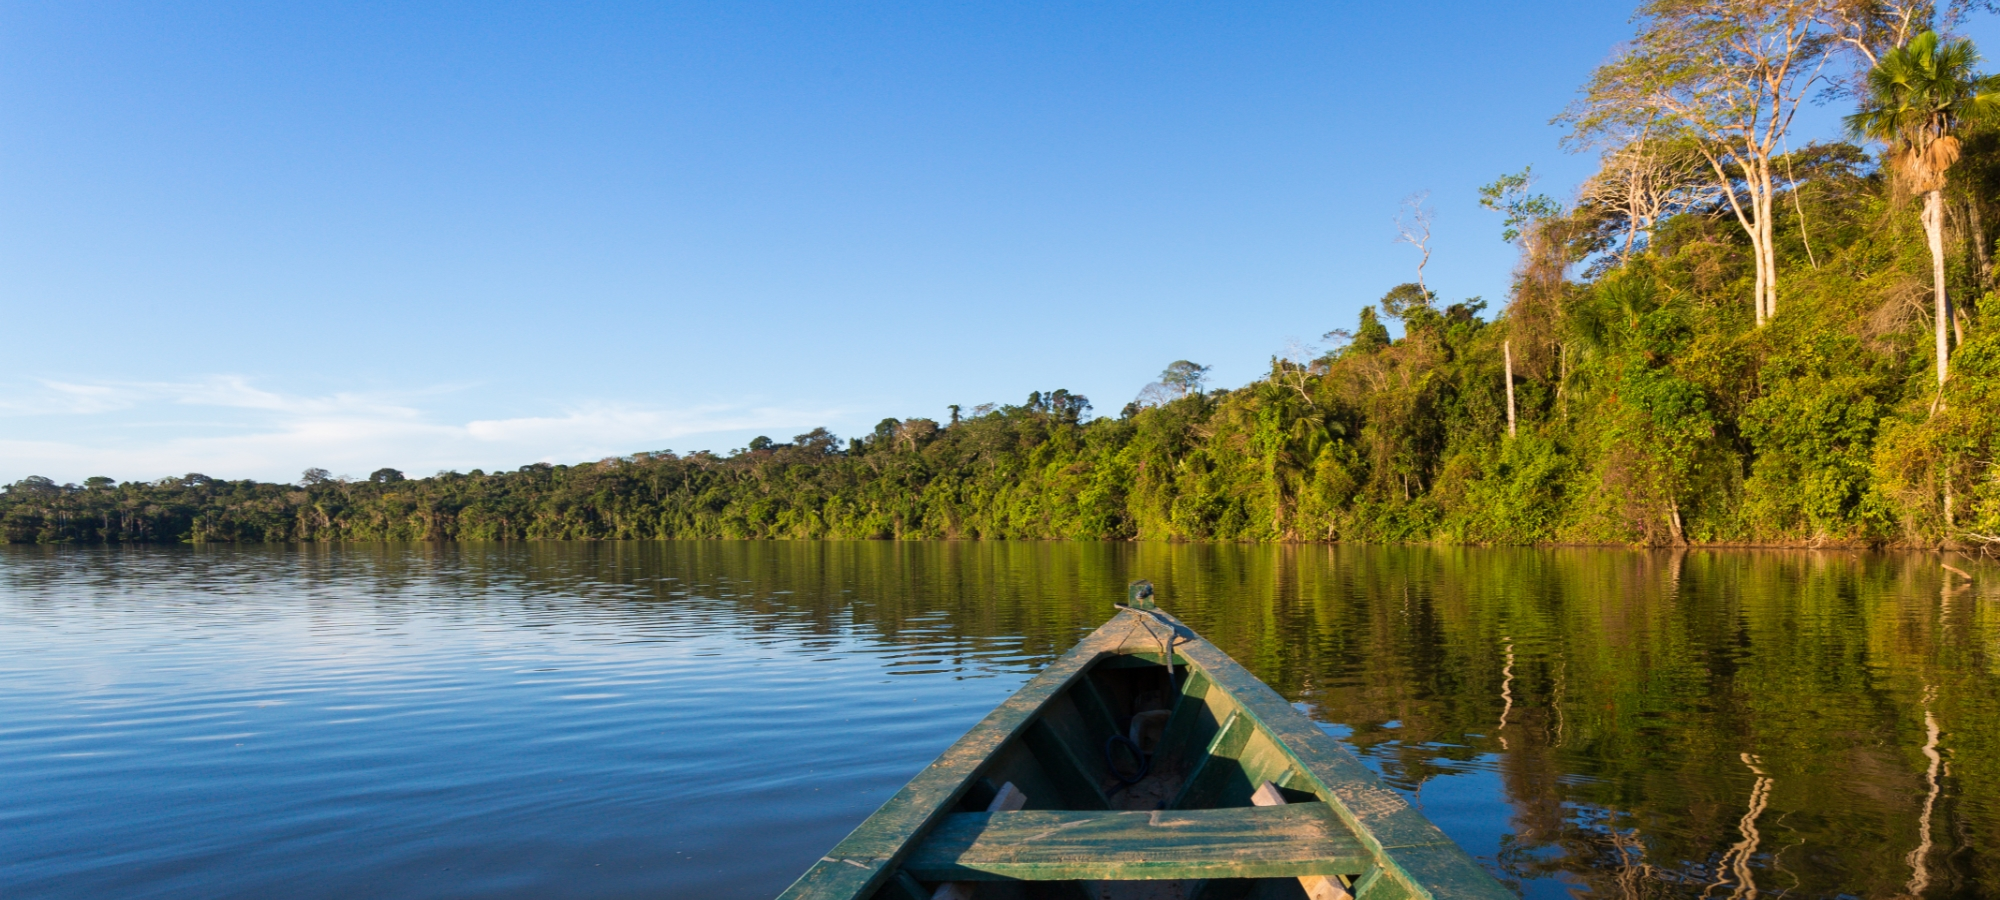 Begib dich auf ein einzigartiges Abenteuer in Iquitos,